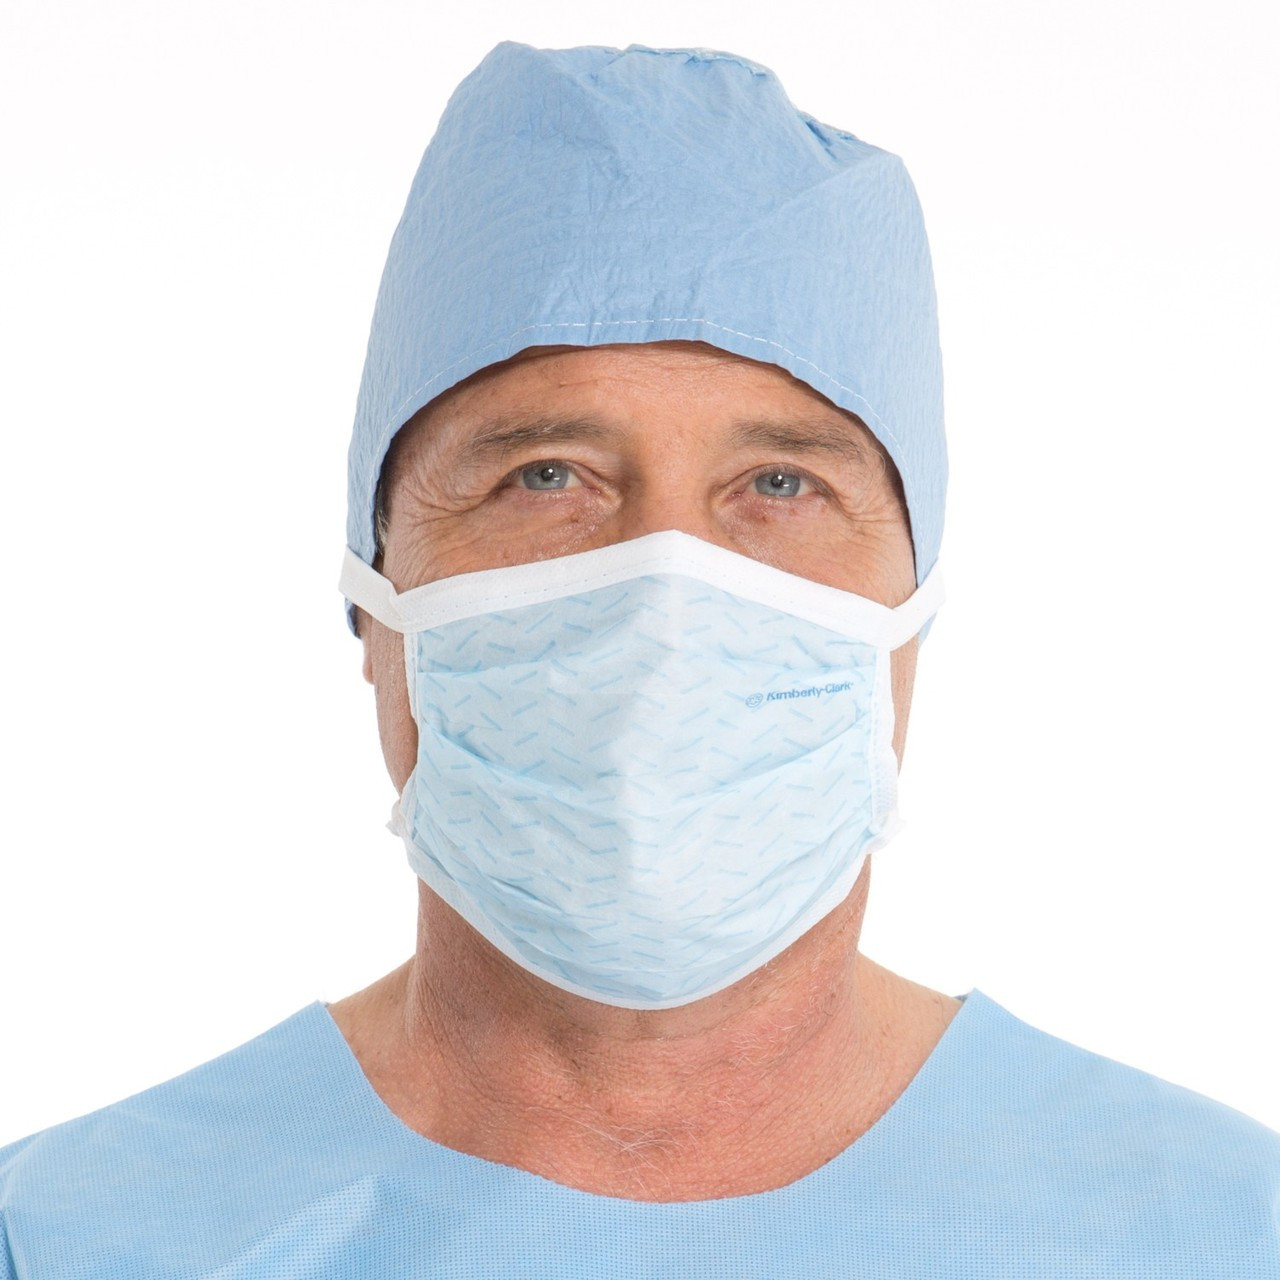 medi surgical mask